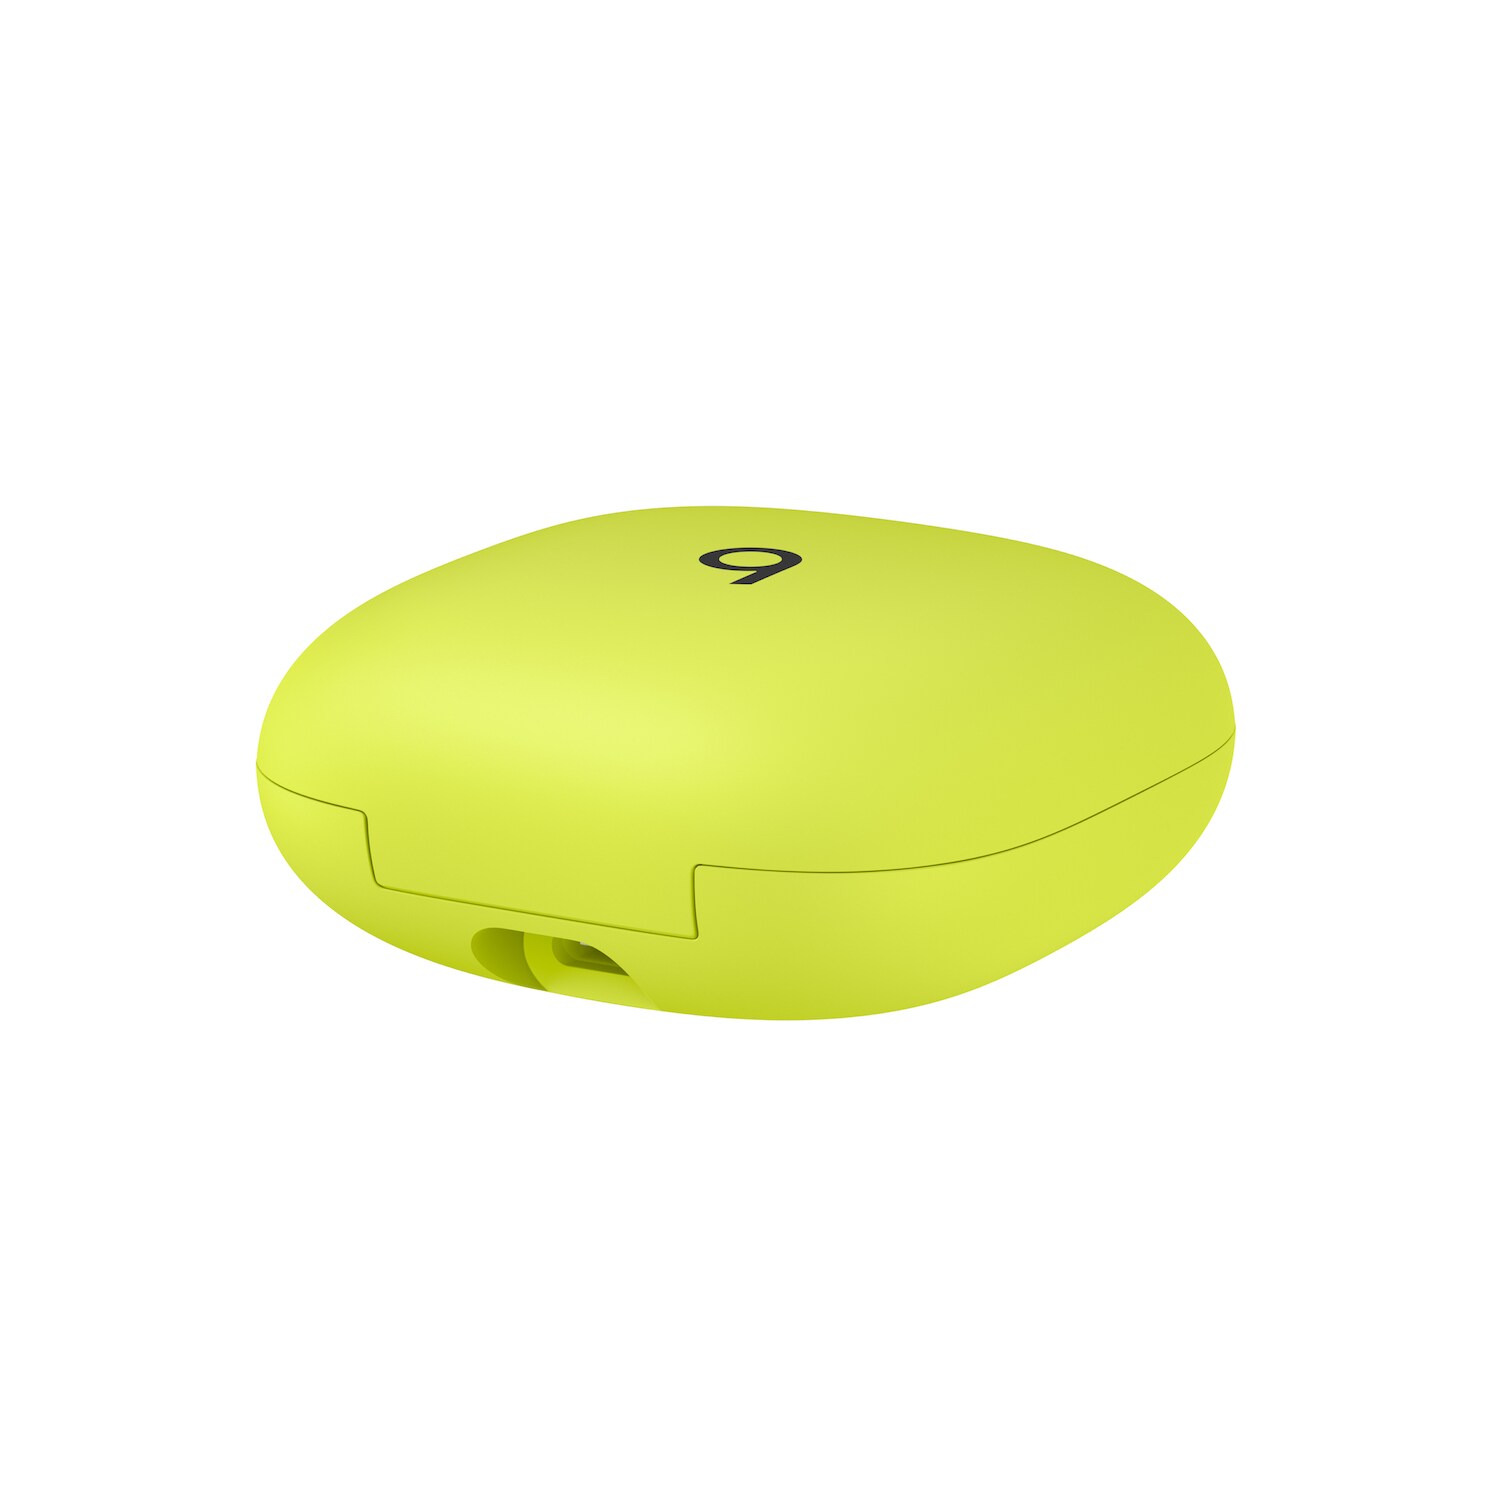 Kopfhörer Pro Cyberport In-Ear Yellow True Beats Wireless Fit Earbuds ++ Volt